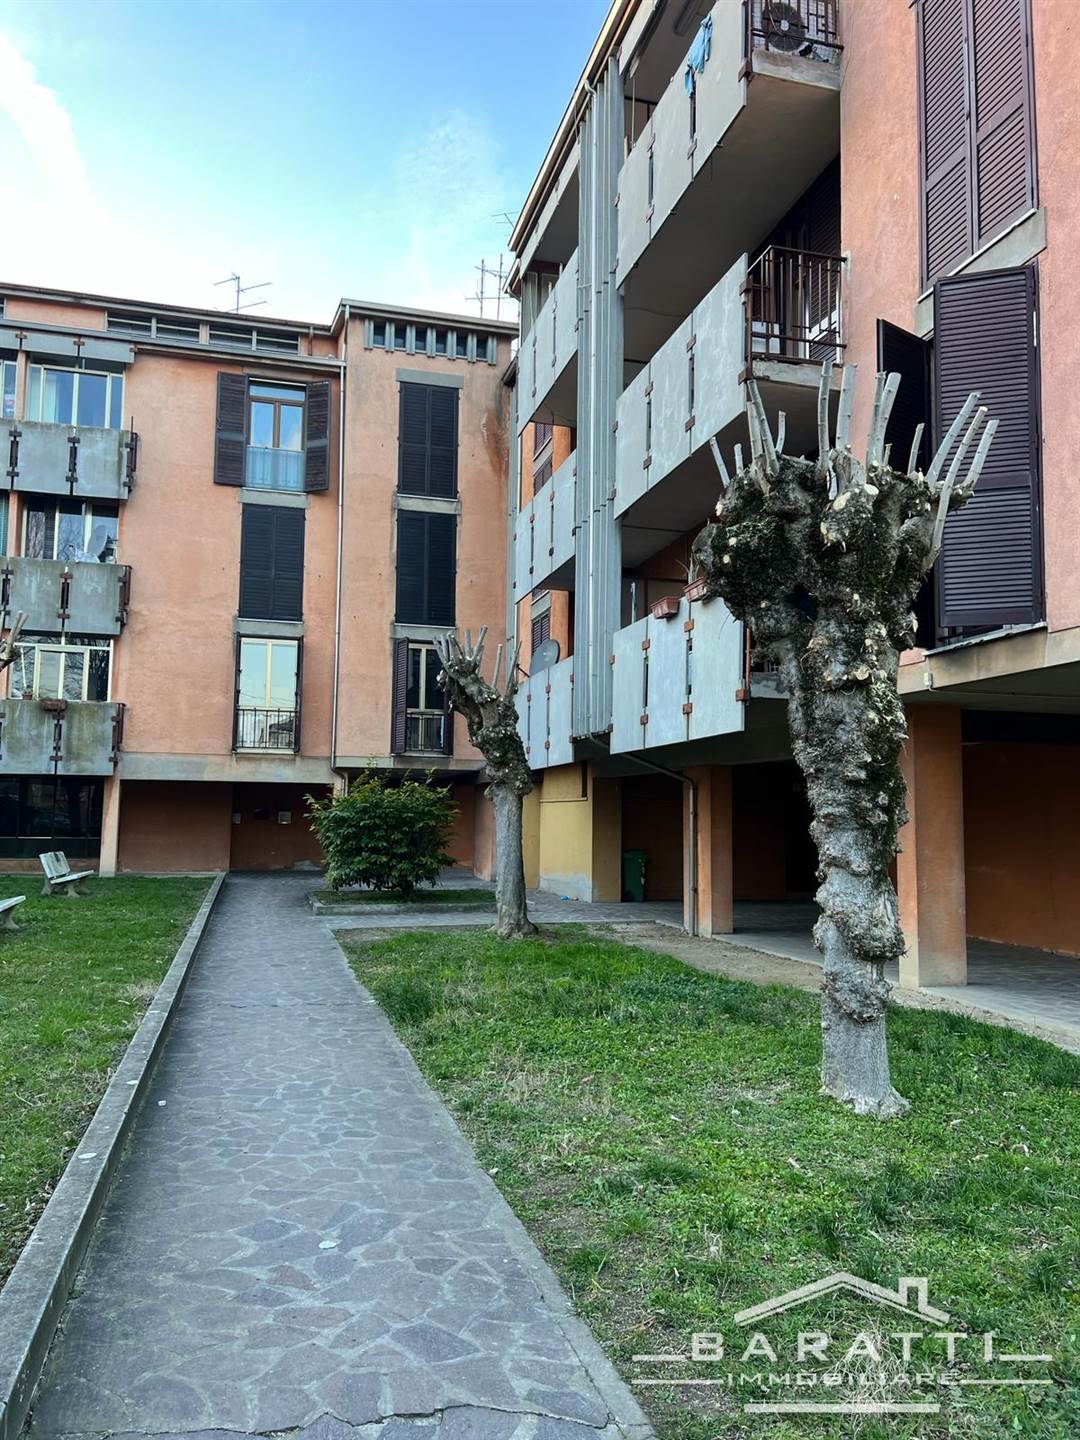 Appartamento in vendita a Suzzara, 6 locali, prezzo € 90.000 | PortaleAgenzieImmobiliari.it